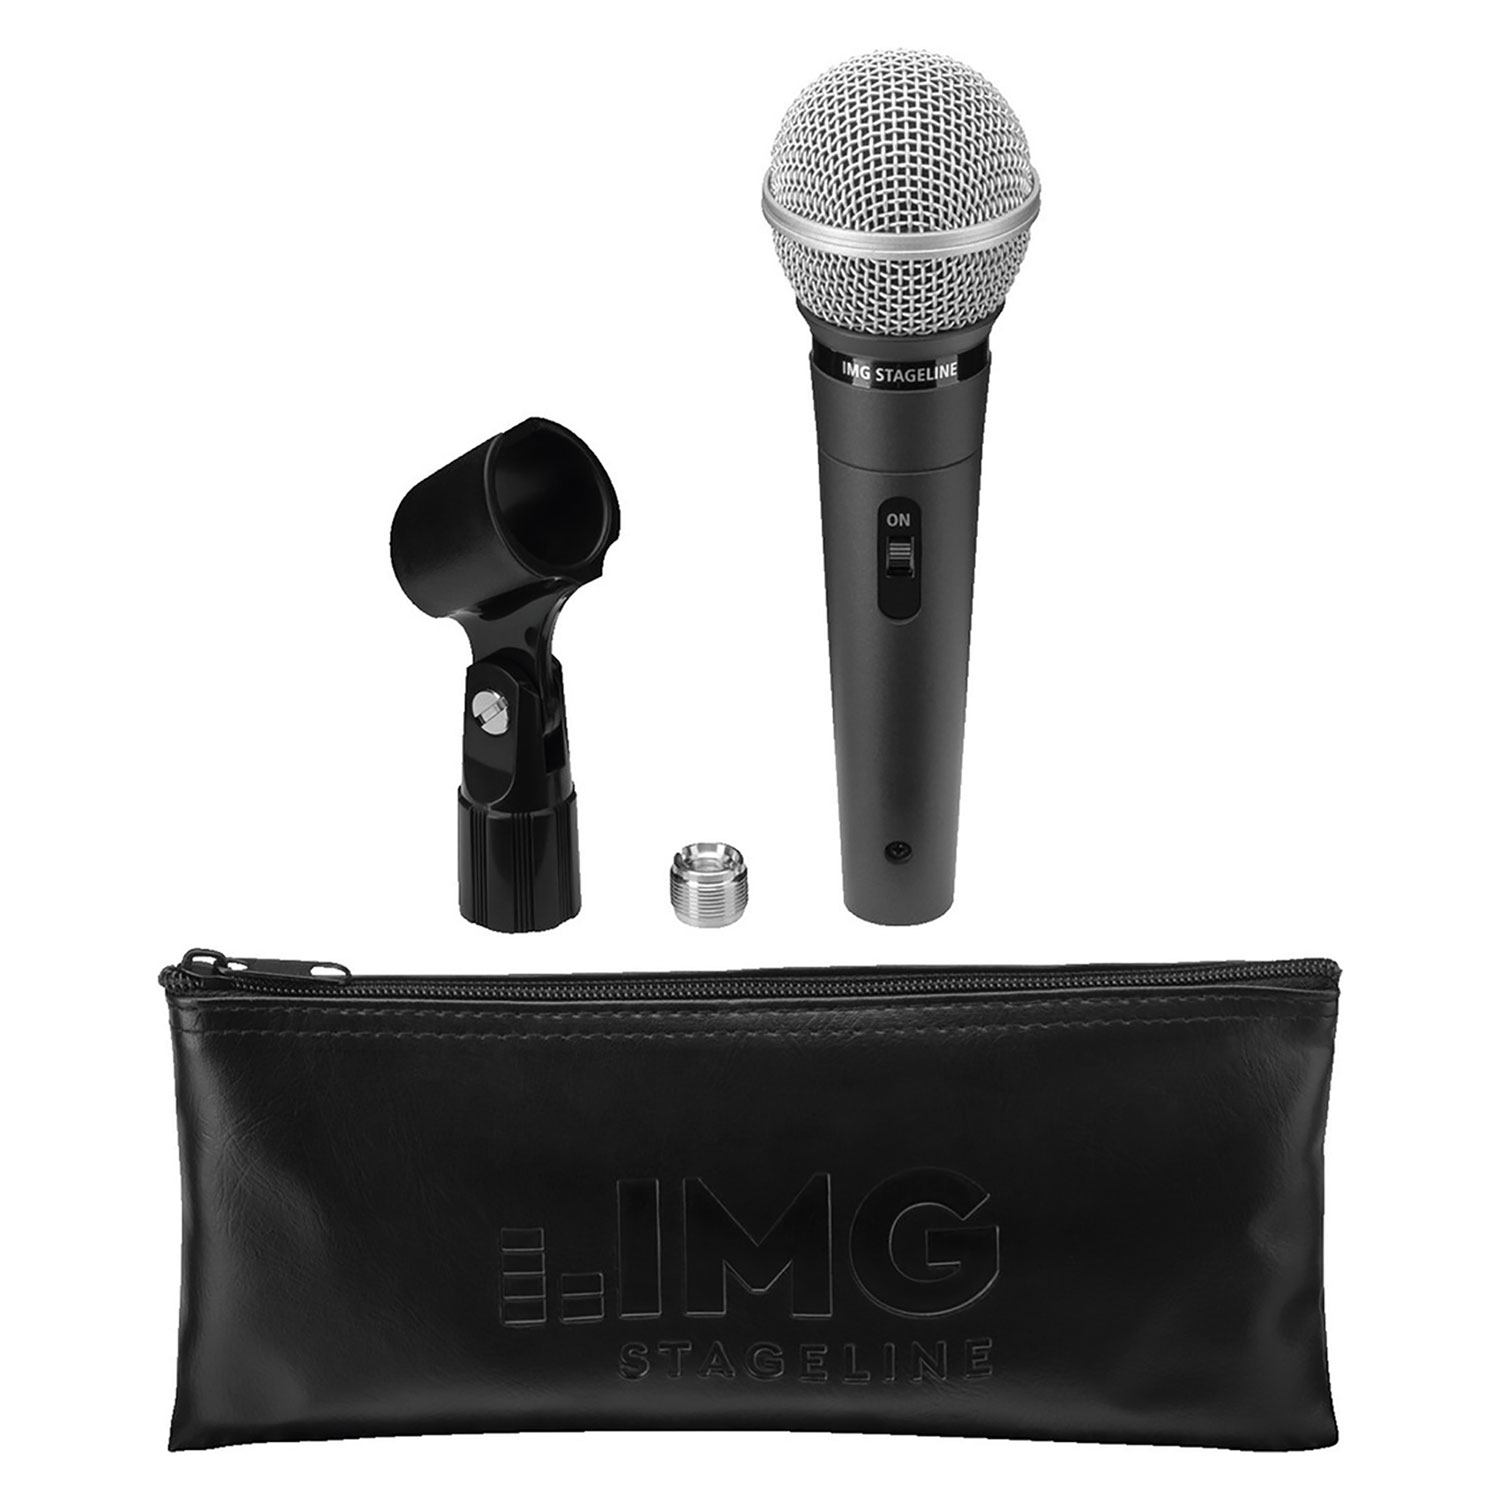 Monacor Mikrofon für Sprache und Gesang DM-3400 inkl Halter und Koffer 